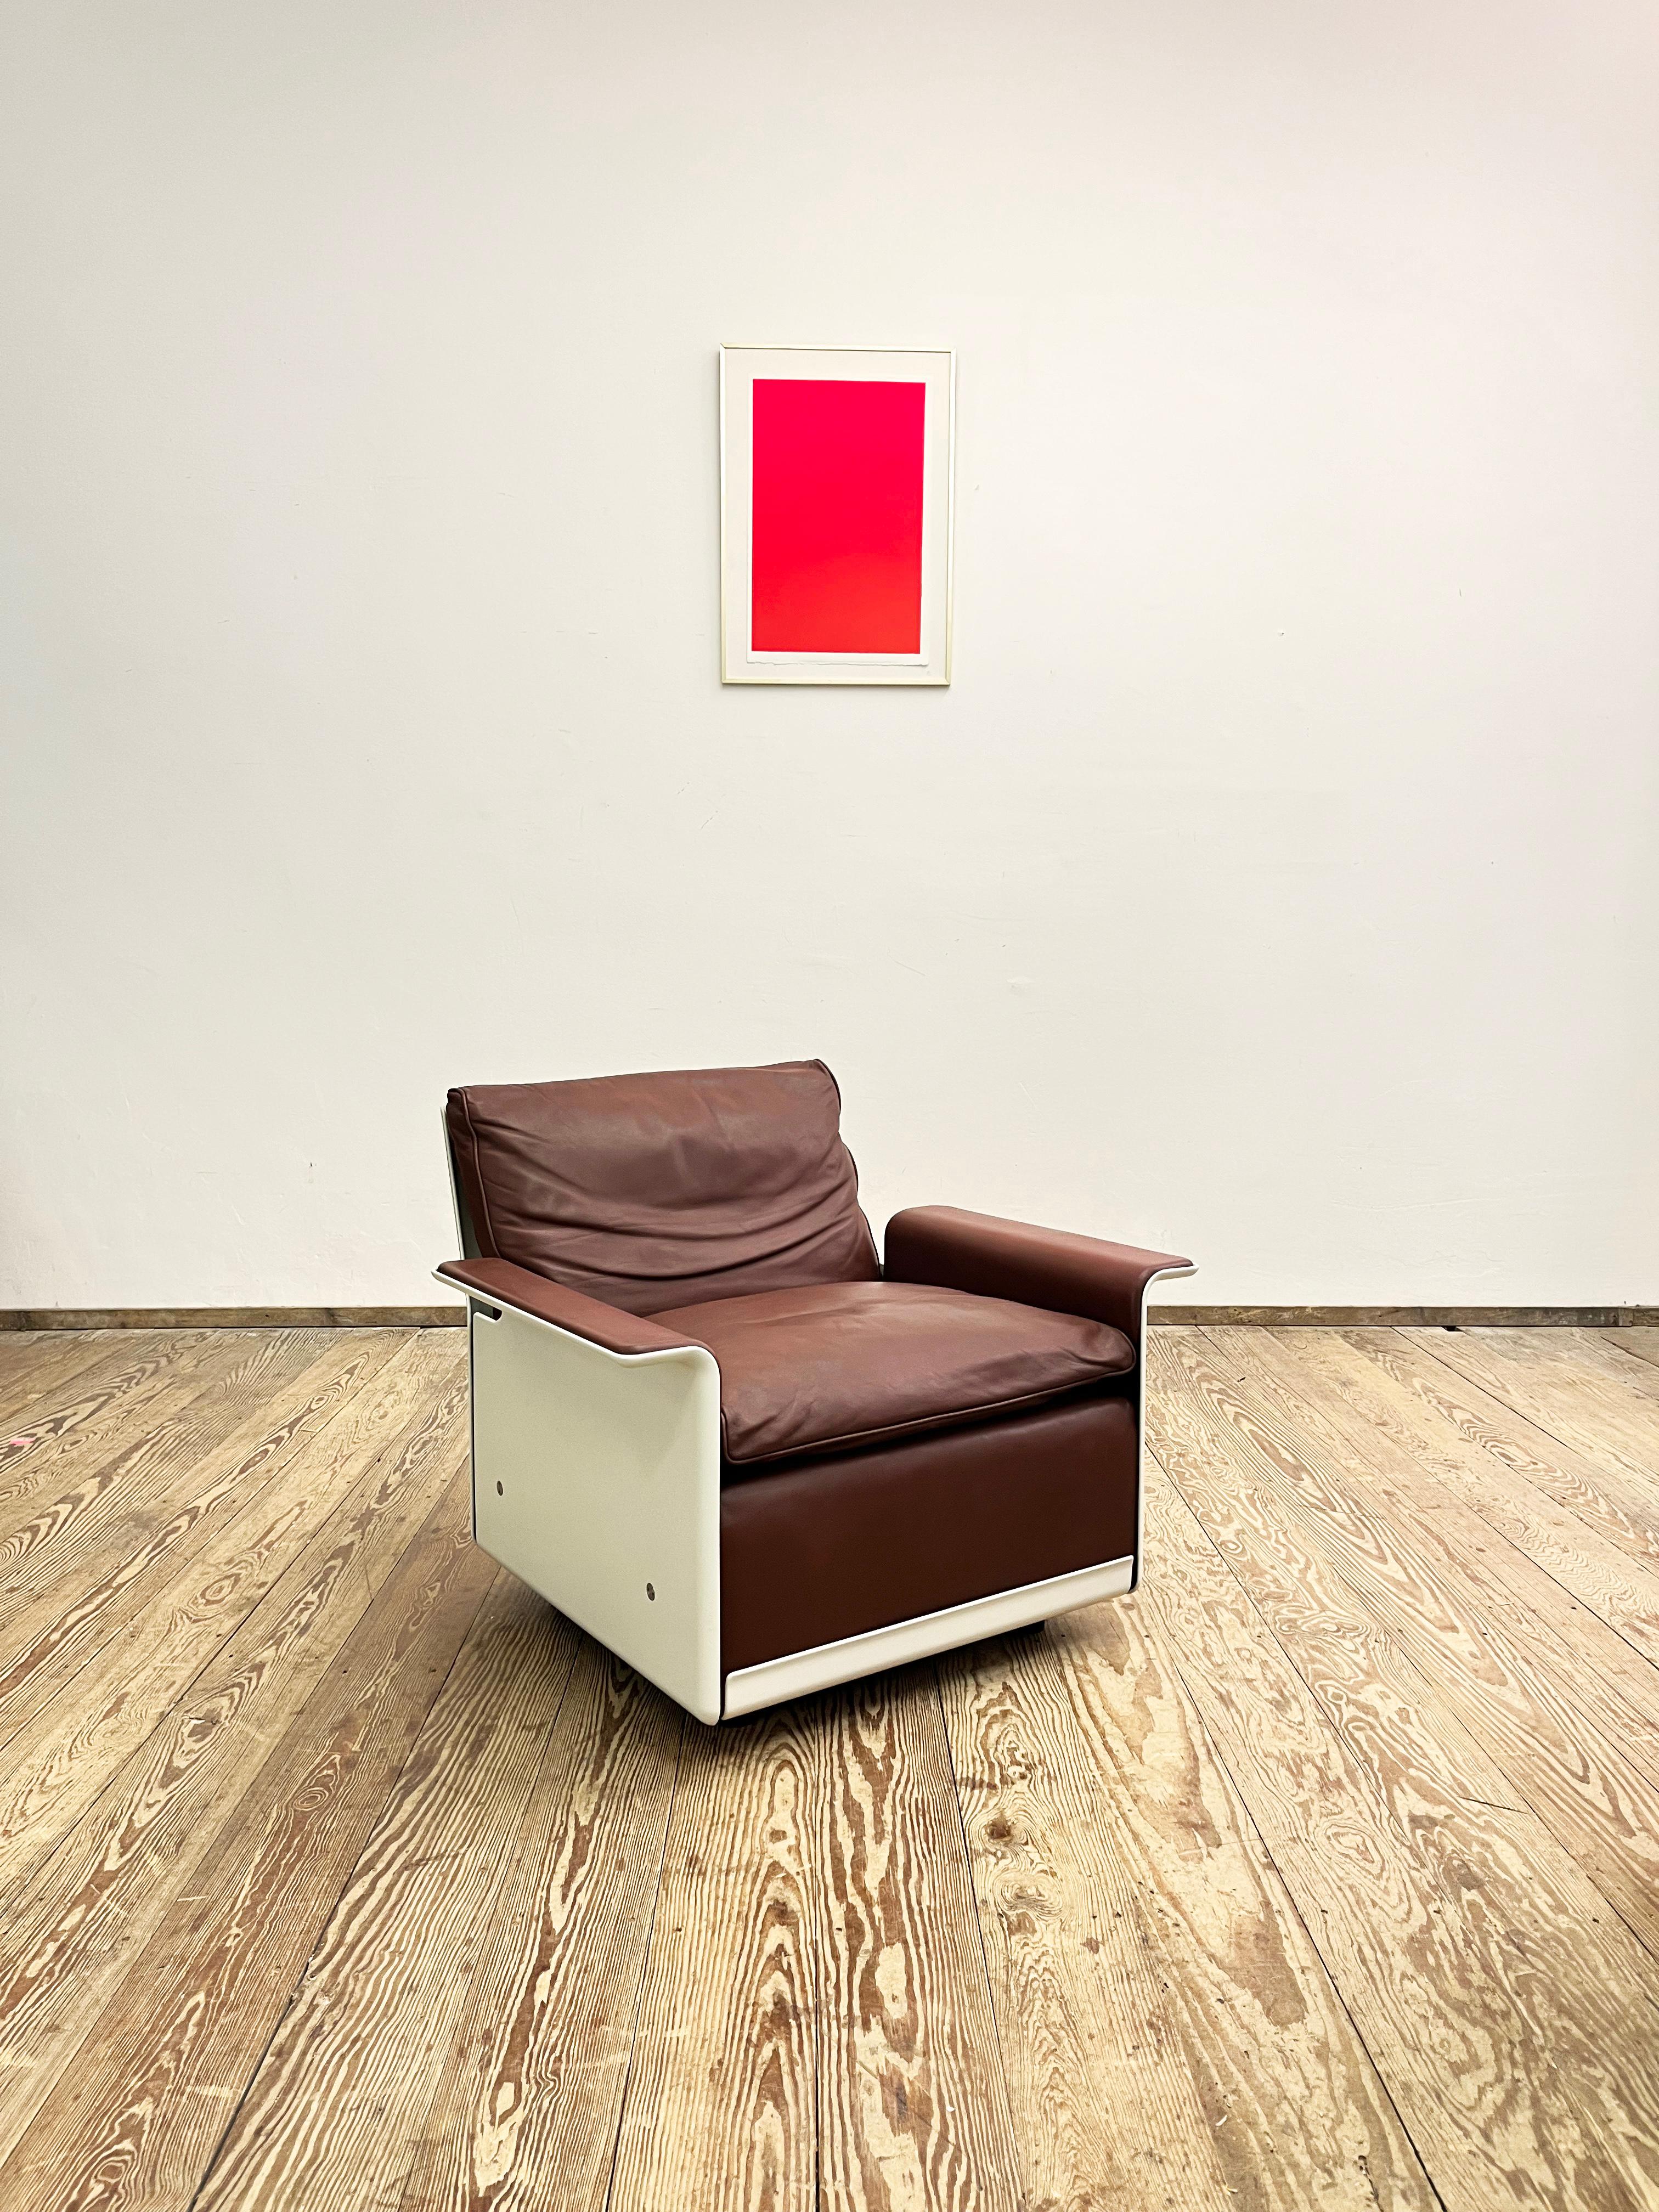 Abmessungen ca. 88 x 78 x 65 x 43 cm (BxTxHxSH)

Dieser formschöne und bequeme Loungesessel wurde vom deutschen Designer Dieter Rams in den 1960er Jahren für Vitsoe in Deutschland entworfen. Die Serie 620 ist ein System von Möbelteilen, aus denen